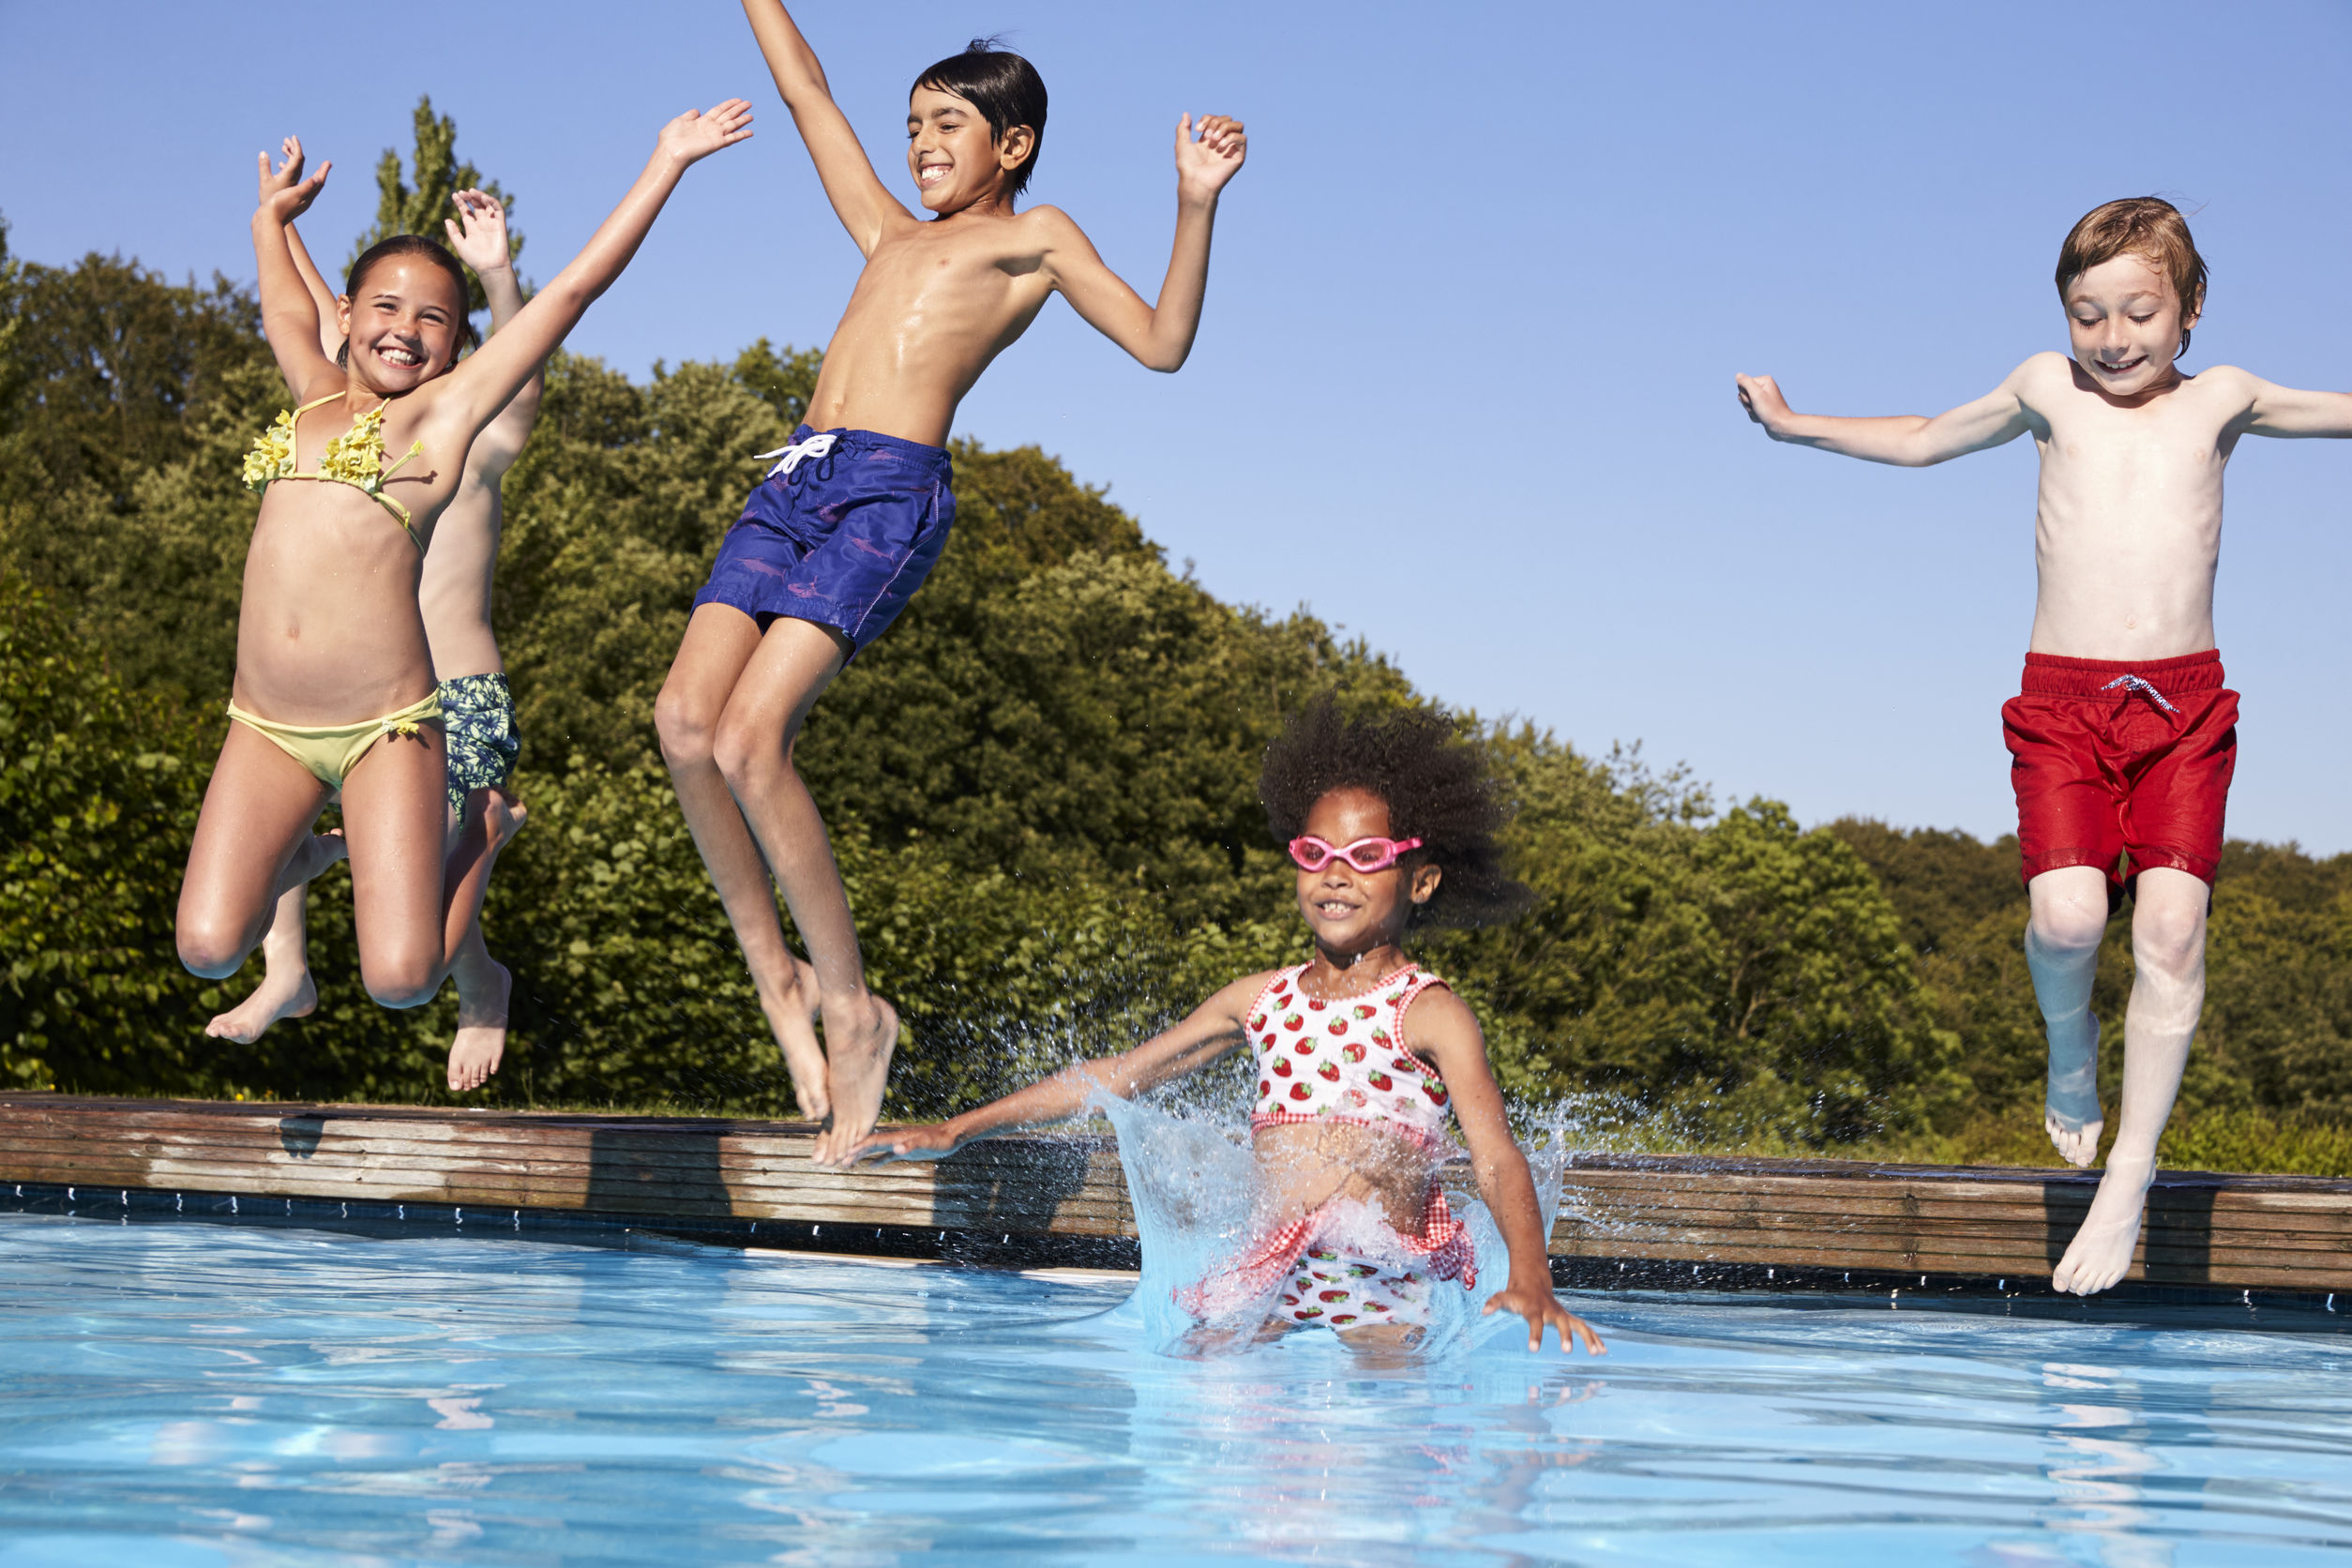 Qué precauciones debemos tomar con los más pequeños en la piscina? | Blogs  Quirónsalud